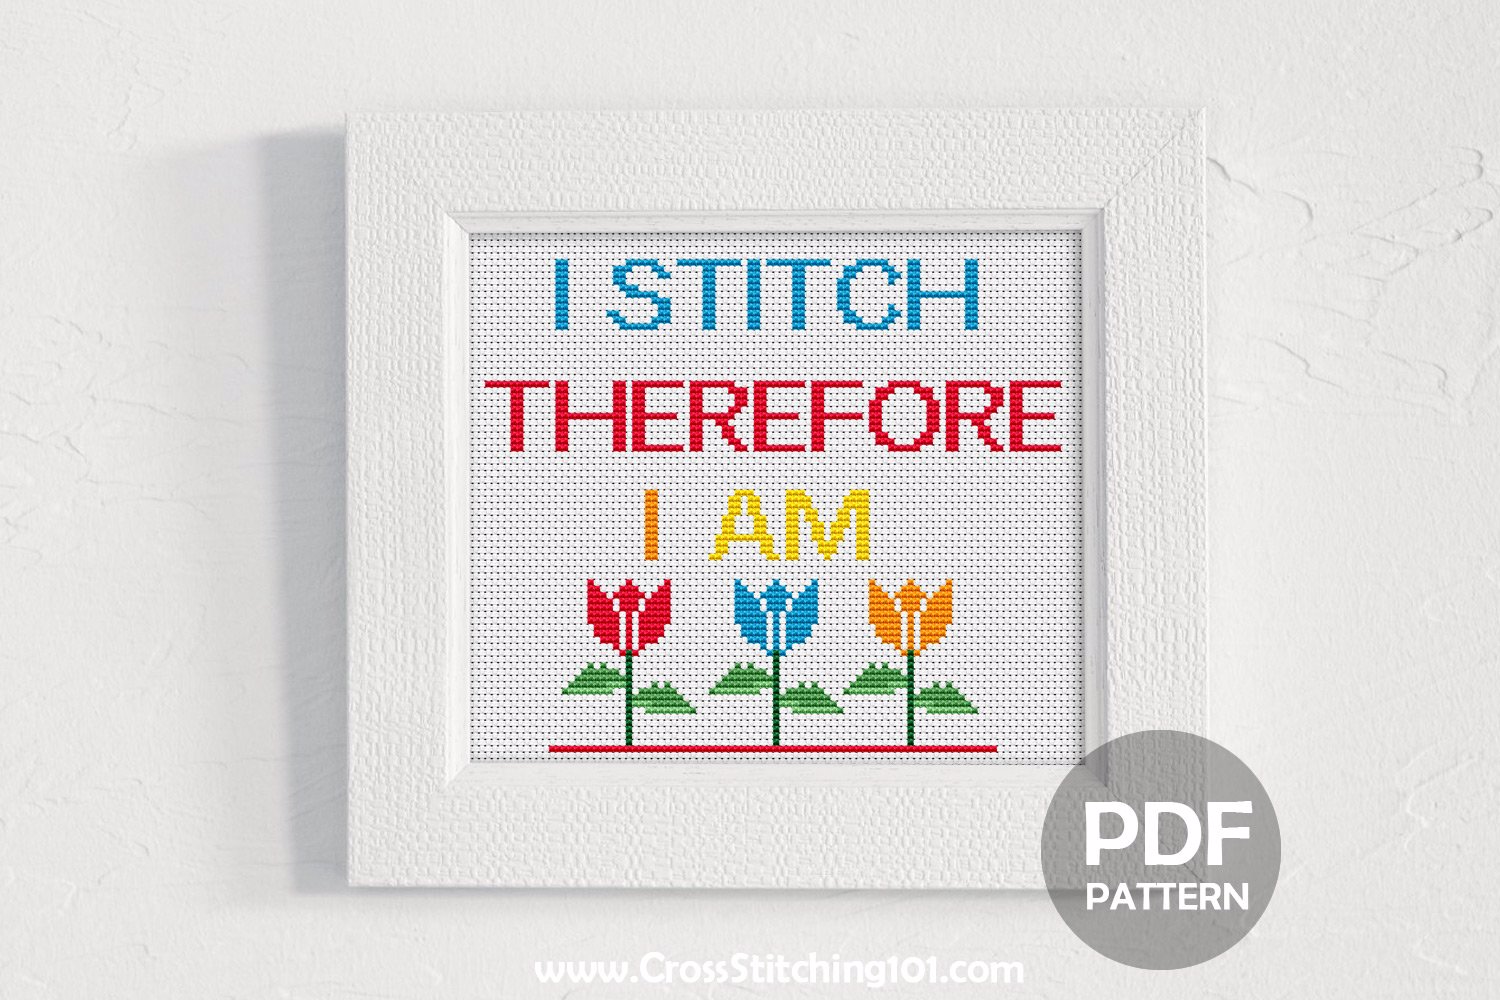 I Stitch Therefore I Am Cross Stitch Pattern